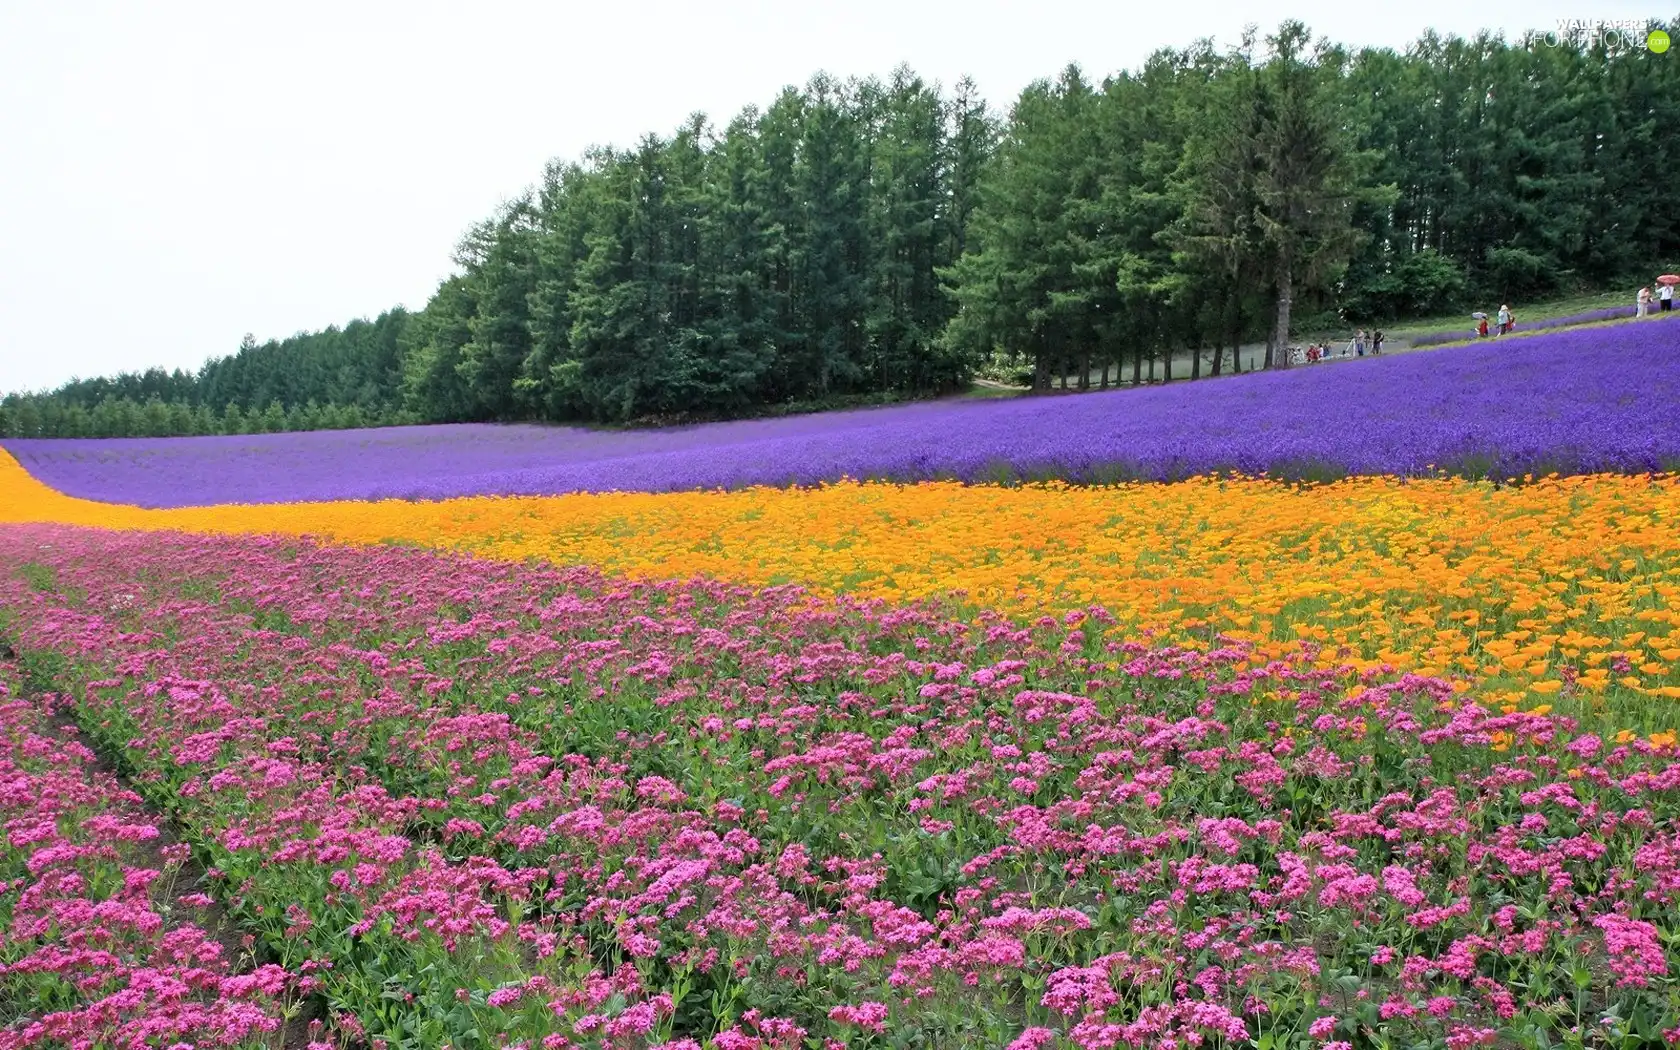 Field, Flowers, forest, farm